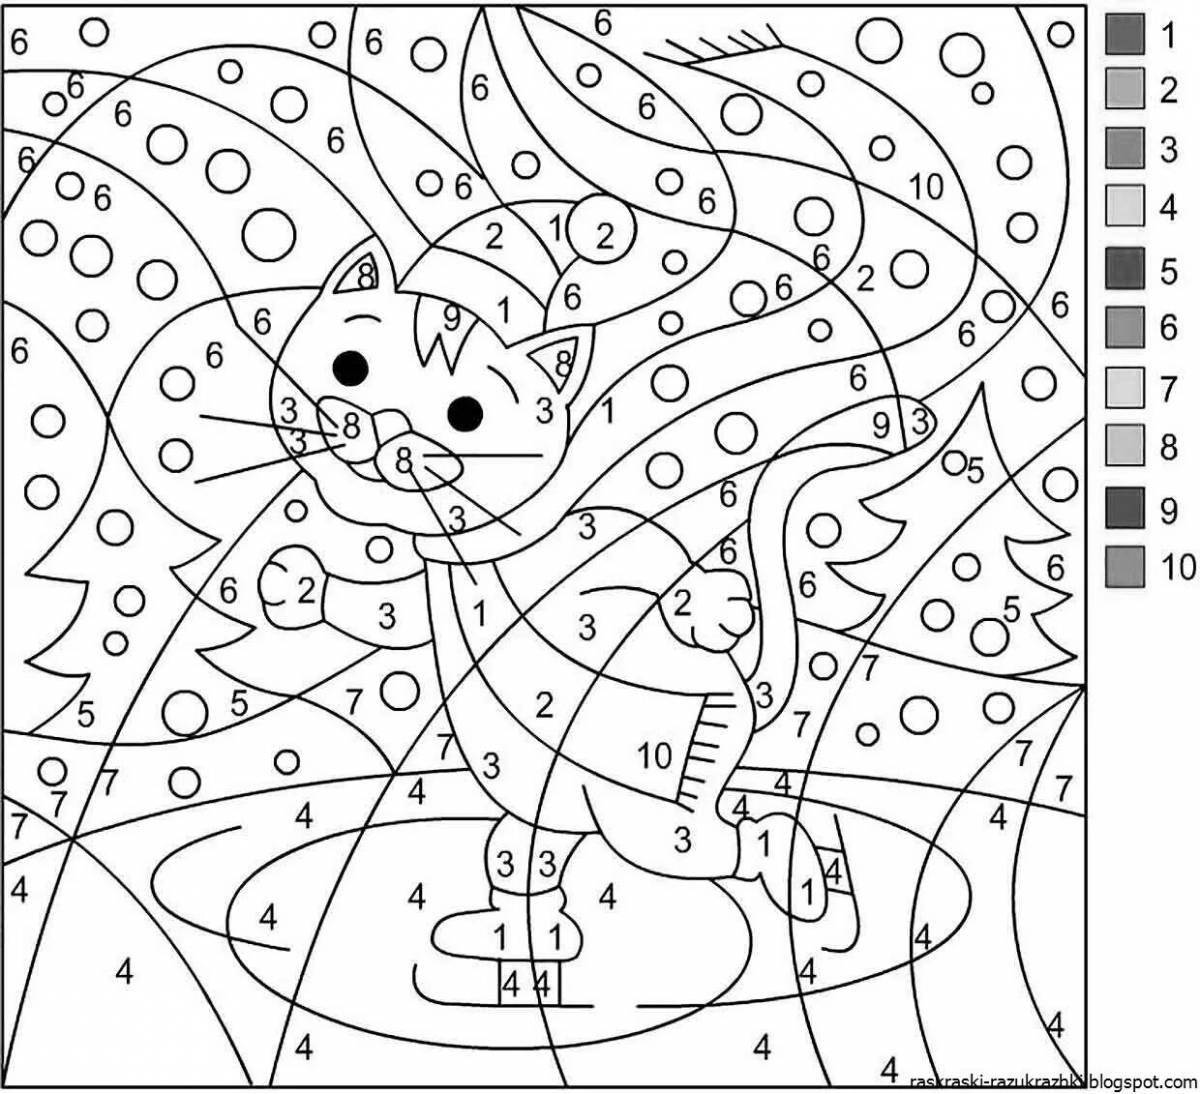 Color-frenzy coloring page для мальчиков и девочек 7 лет